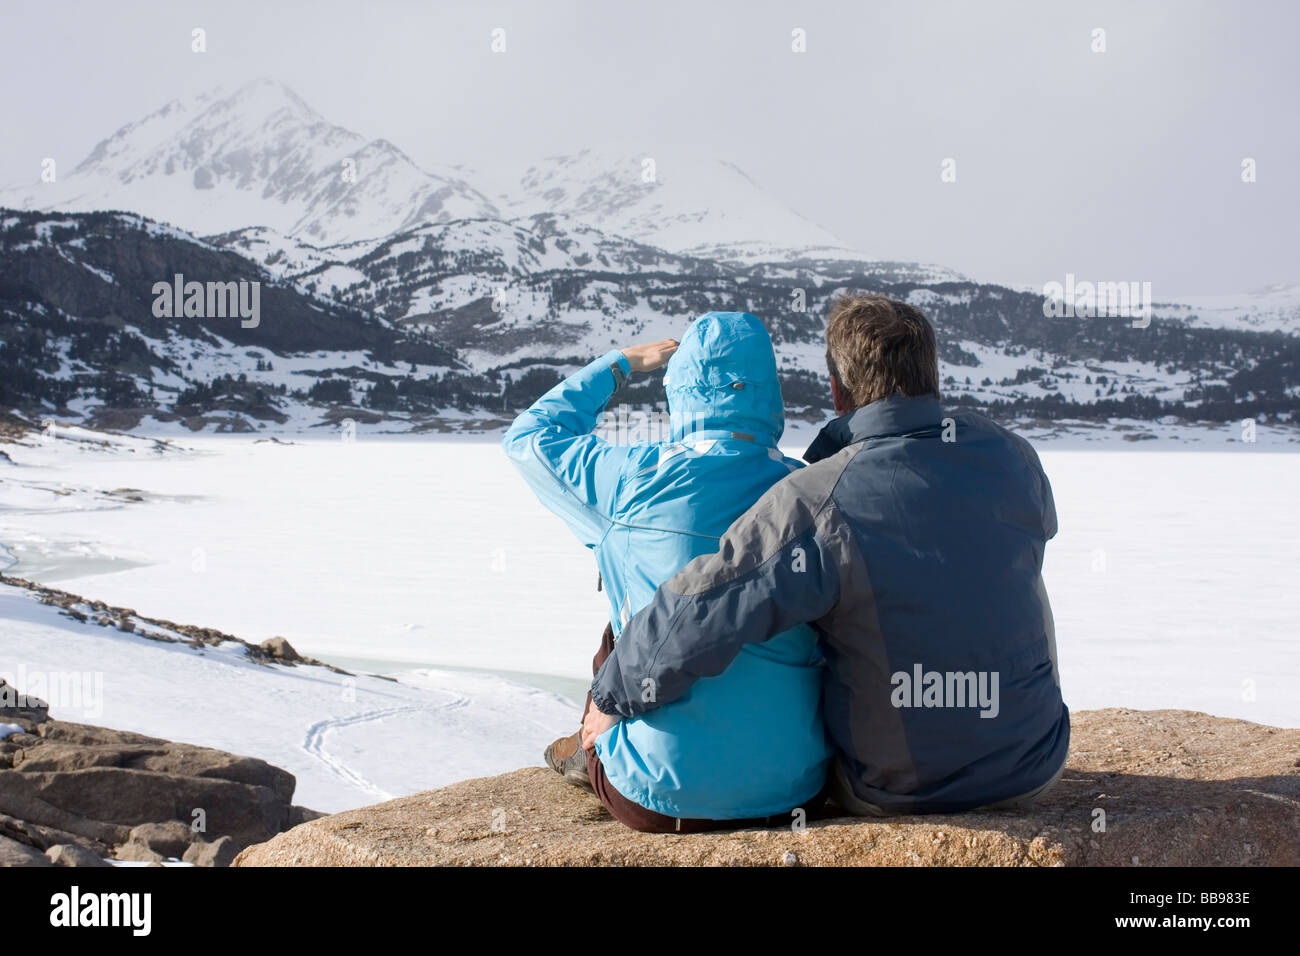 Pareja sentada delante de las montañas con nieve y hielo Foto de stock